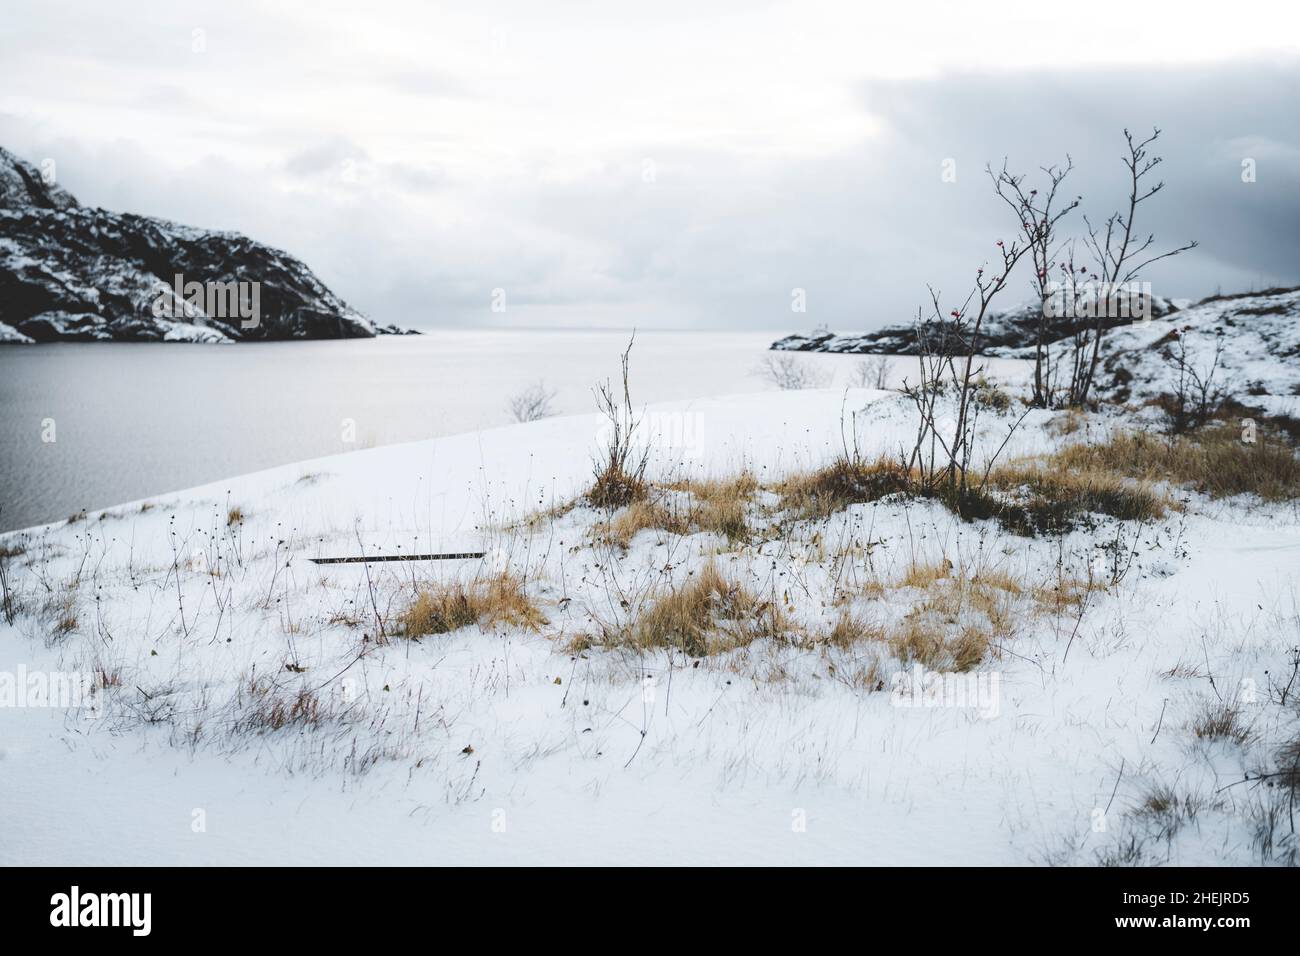 Cielo invernal sobre la costa nevada a lo largo del fiordo congelado, Nusfjord, condado de Nordland, Islas Lofoten, Noruega Foto de stock